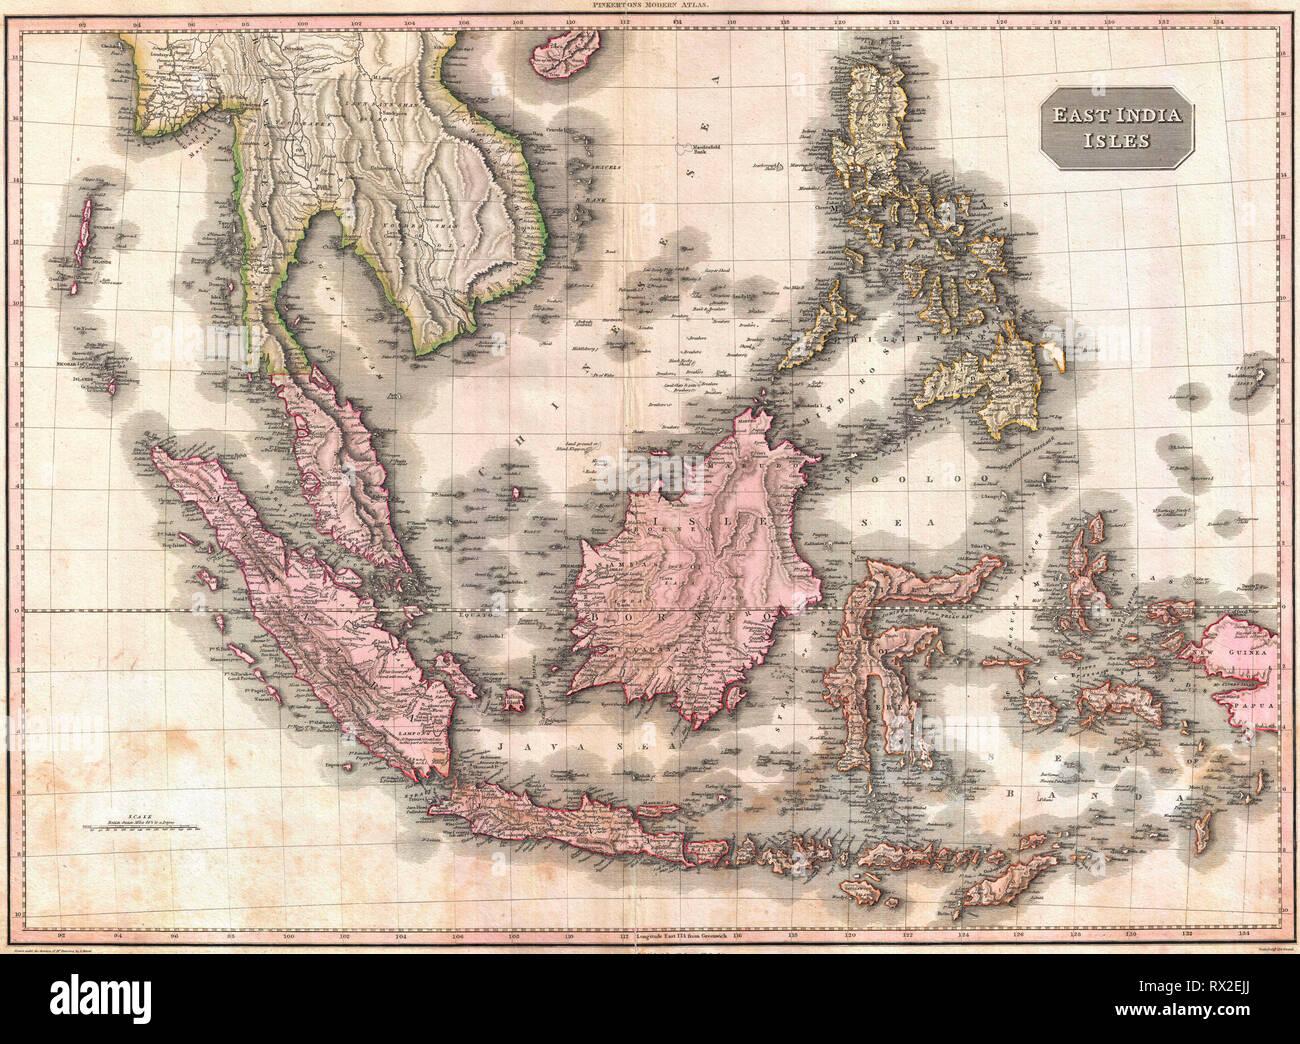 Pinkerton è straordinario 1818 mappa delle Indie Orientali. Coperchi dalla Birmania sud a Java e dalle Isole Andamane verso est per quanto riguarda le Filippine e in Nuova Guinea. Include tutta la penisola Malese, gran parte del sud-est asiatico (Thailandia, Cambogia e Vietnam), Sumatra, Java, Borneo e le Filippine. Foto Stock